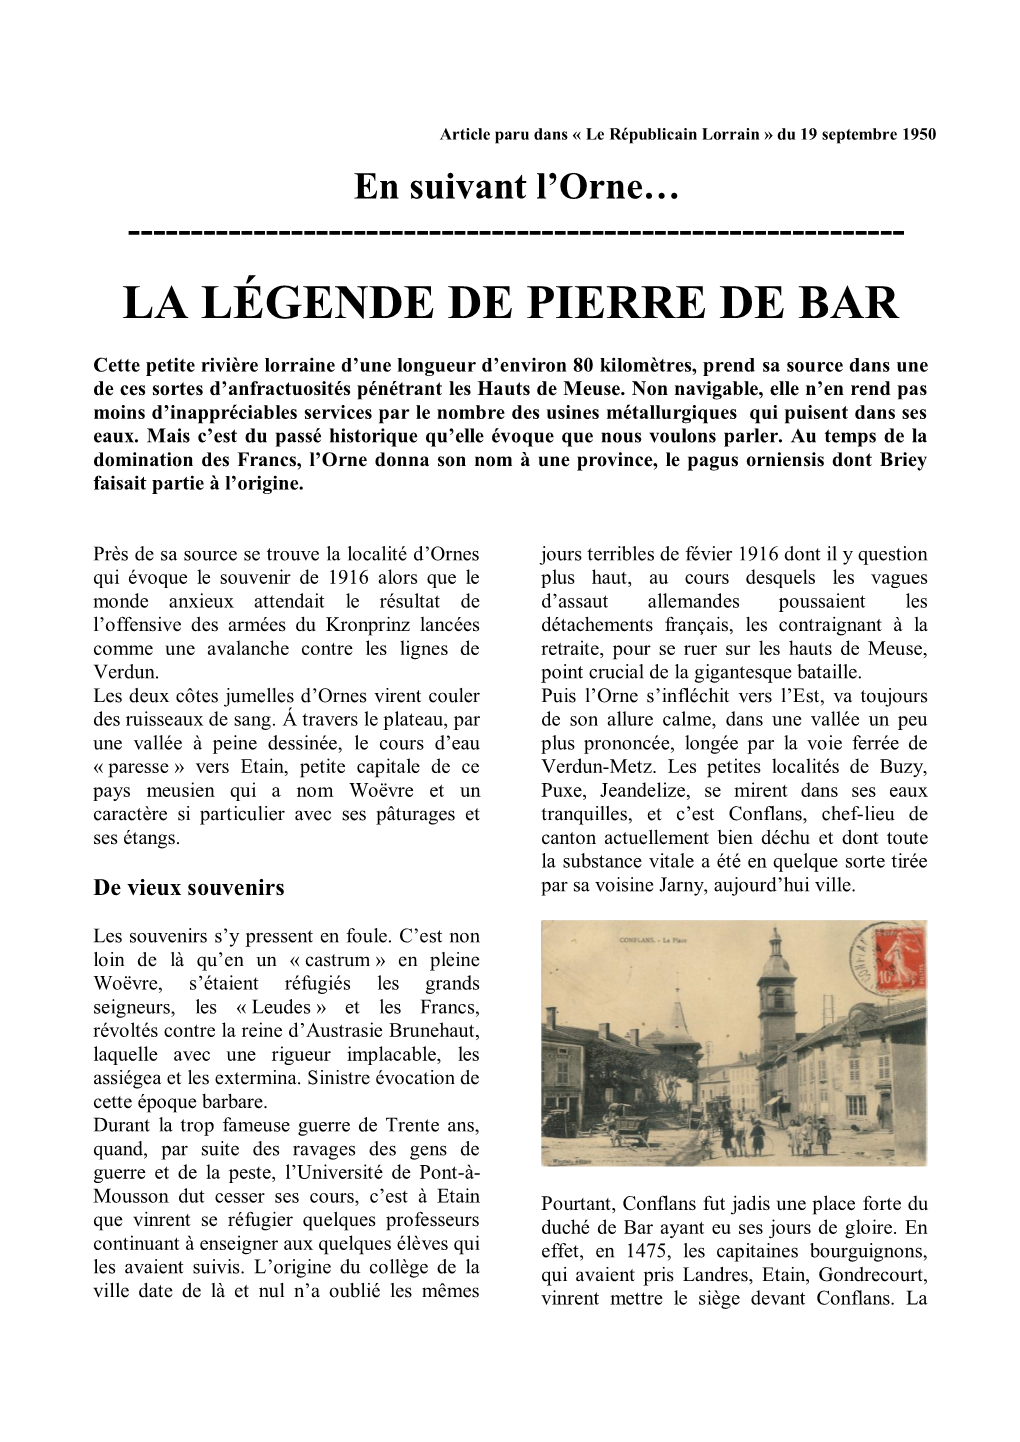 La Légende De Pierre De Bar